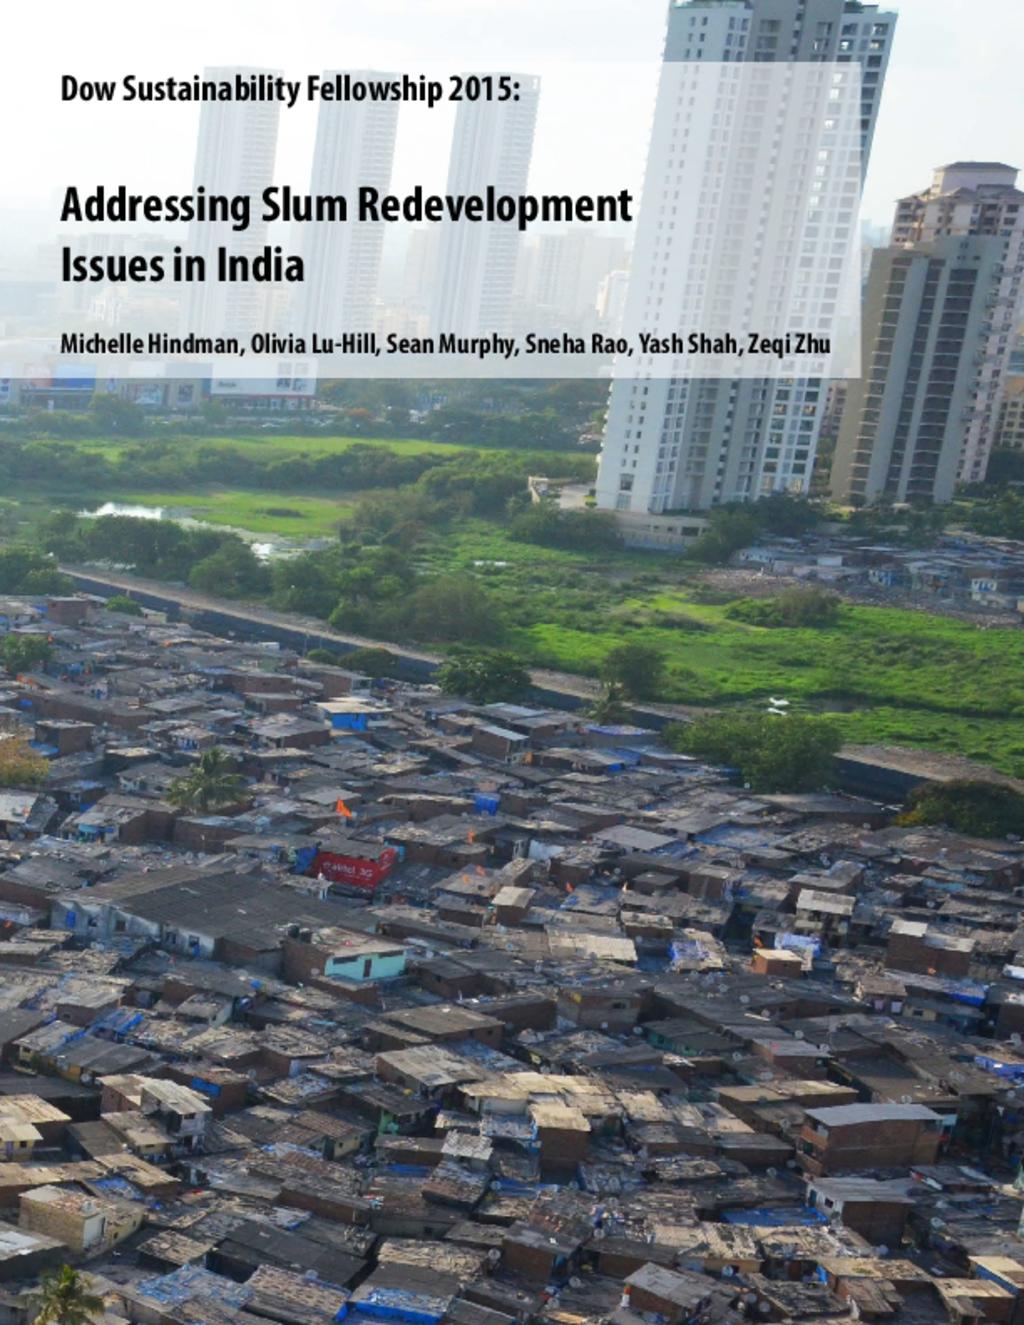 Addressing Slum Redevelopment Issues in India